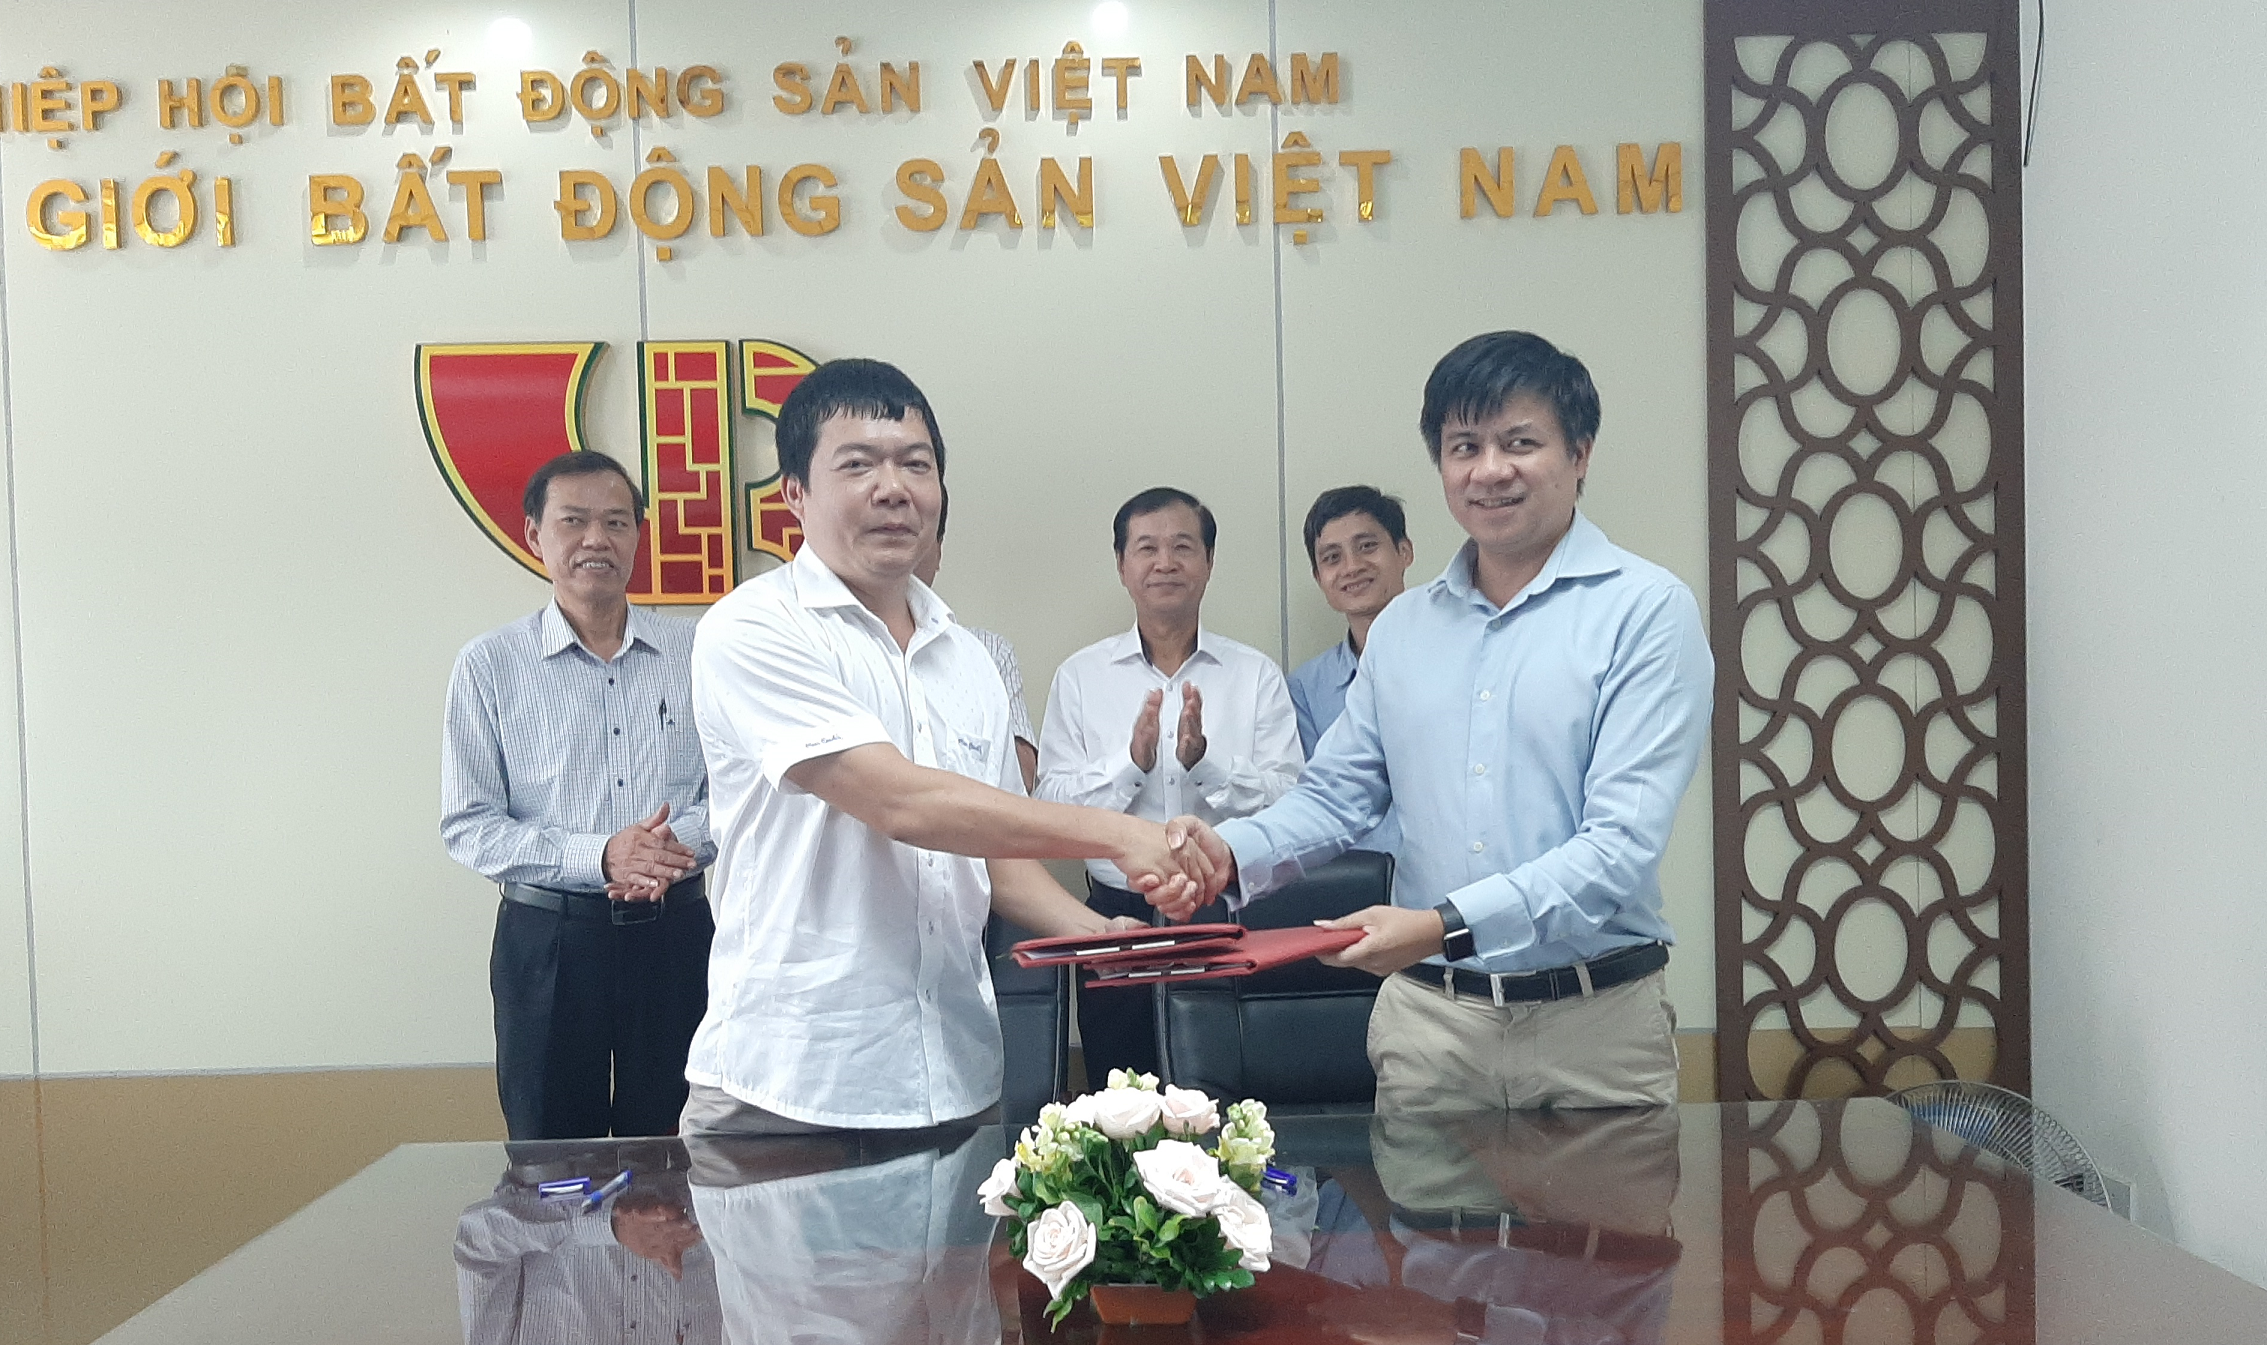 Tpizi trở thành đối tác hạ tầng công nghệ của Hội môi giới bất động sản Việt Nam